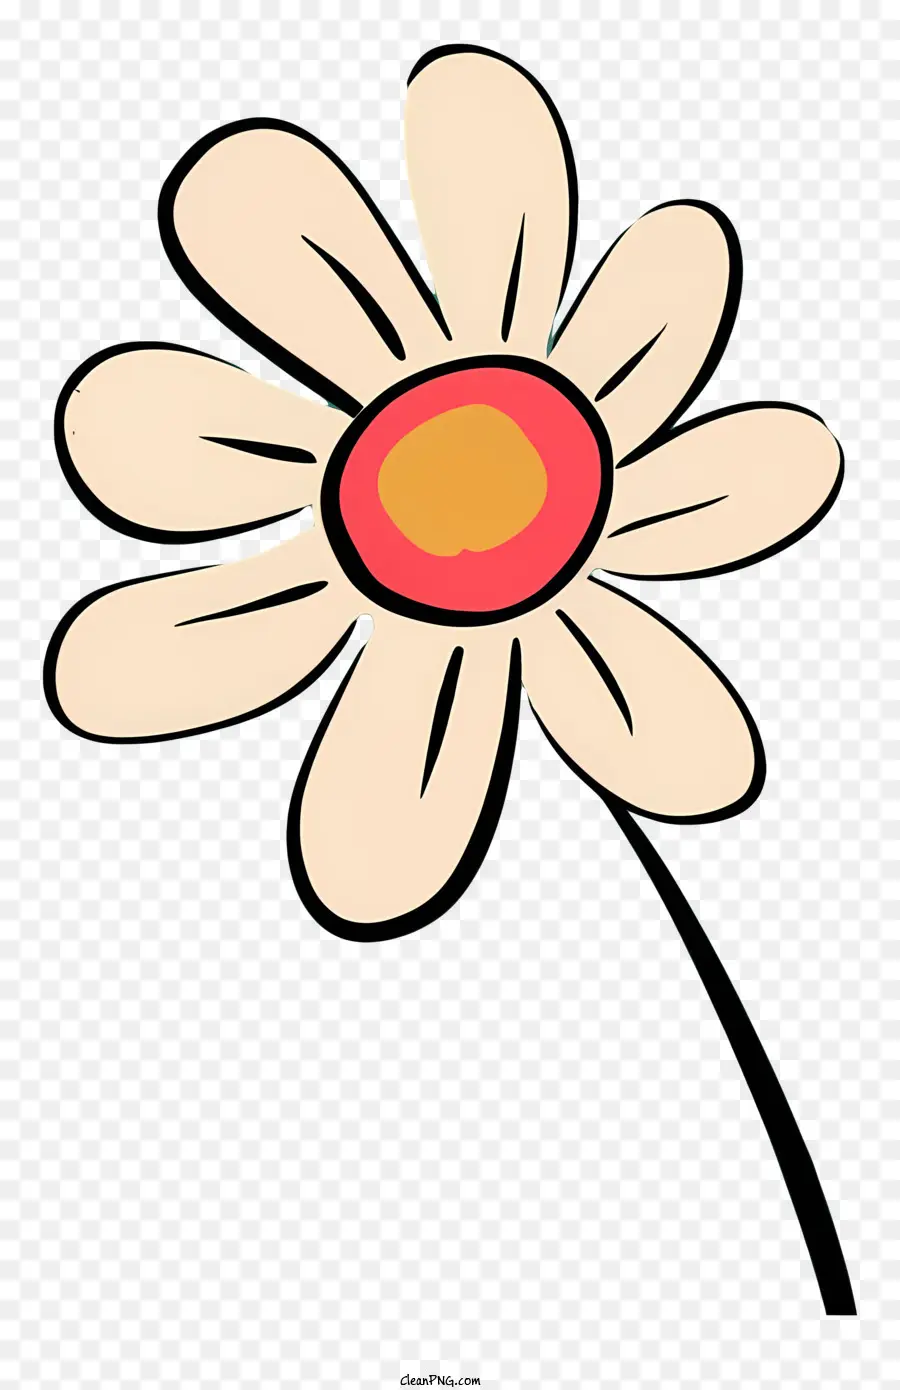 Daisy Flower - Minimalistische Cartoon Gänseblümchen mit weißen Blütenblättern und gelbem Zentrum